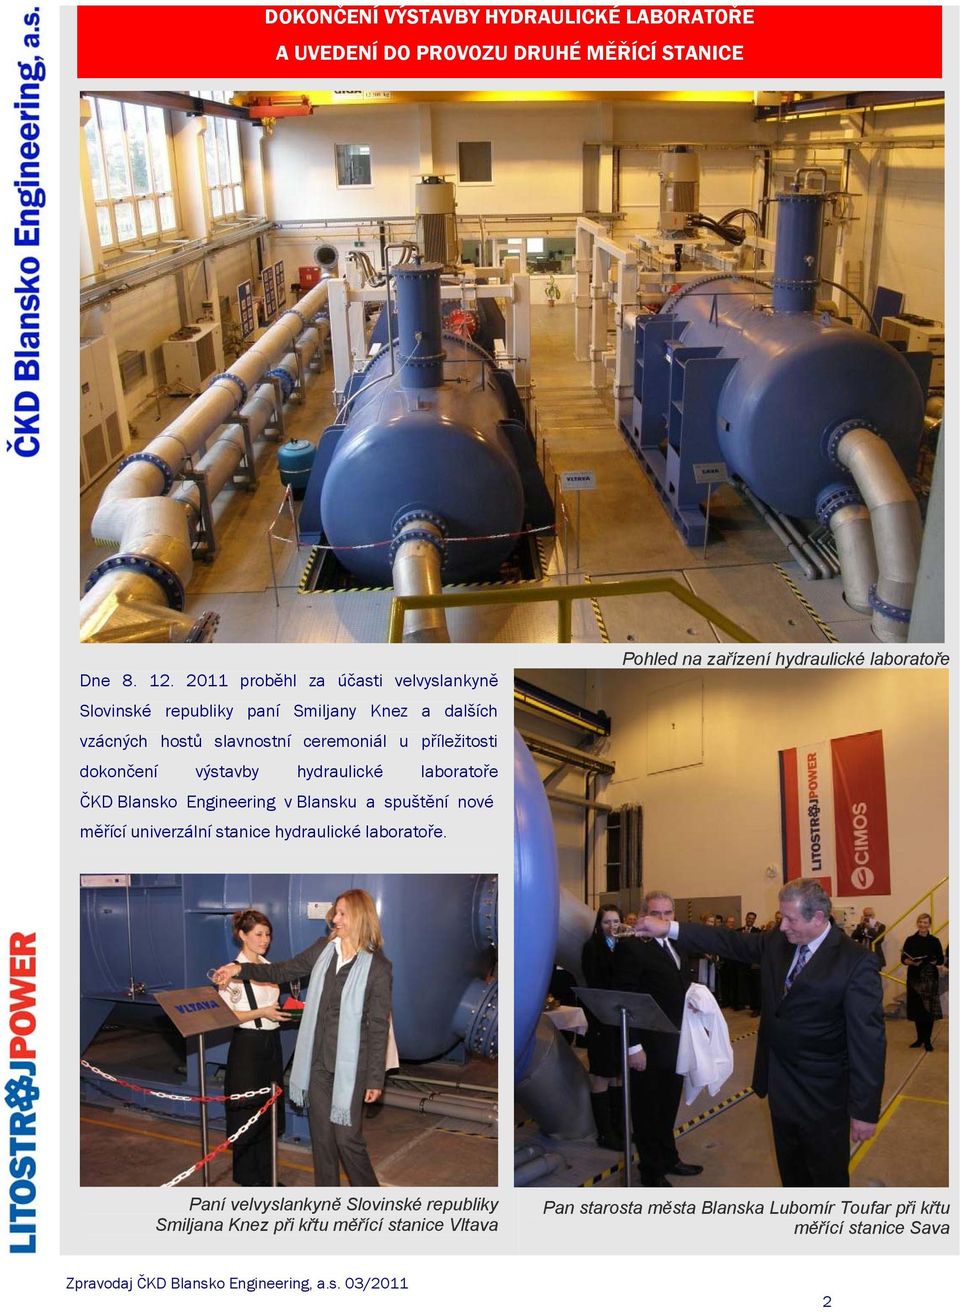 dokončení výstavby hydraulické laboratoře ČKD Blansko Engineering v Blansku a spuštění nové měřící univerzální stanice hydraulické laboratoře.